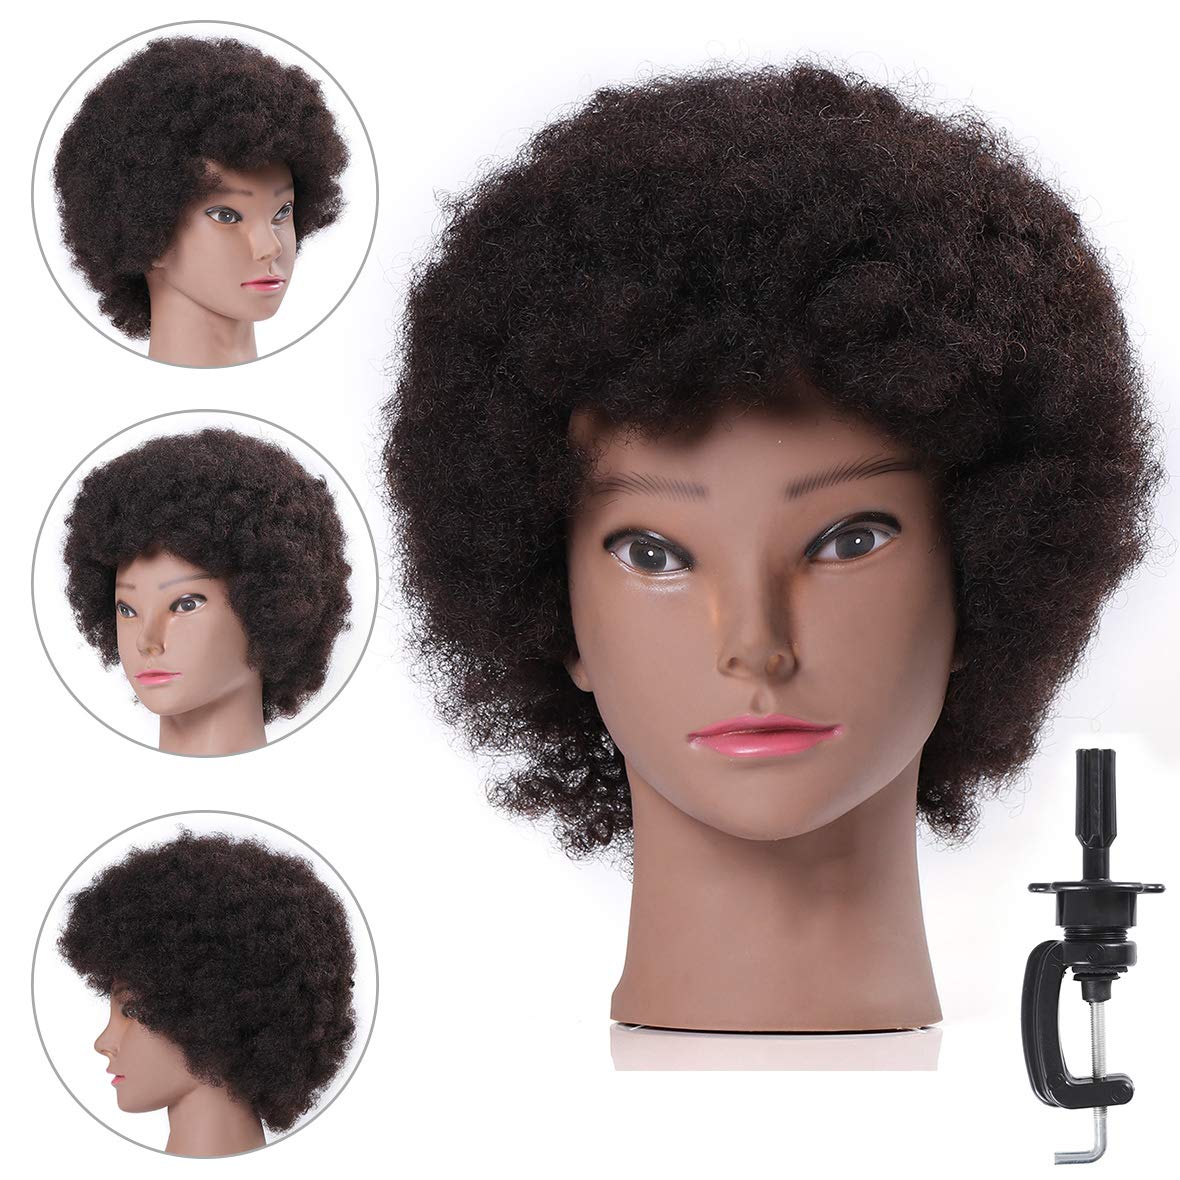 30 Training Head Mannequin Head With Hair Braid Salon